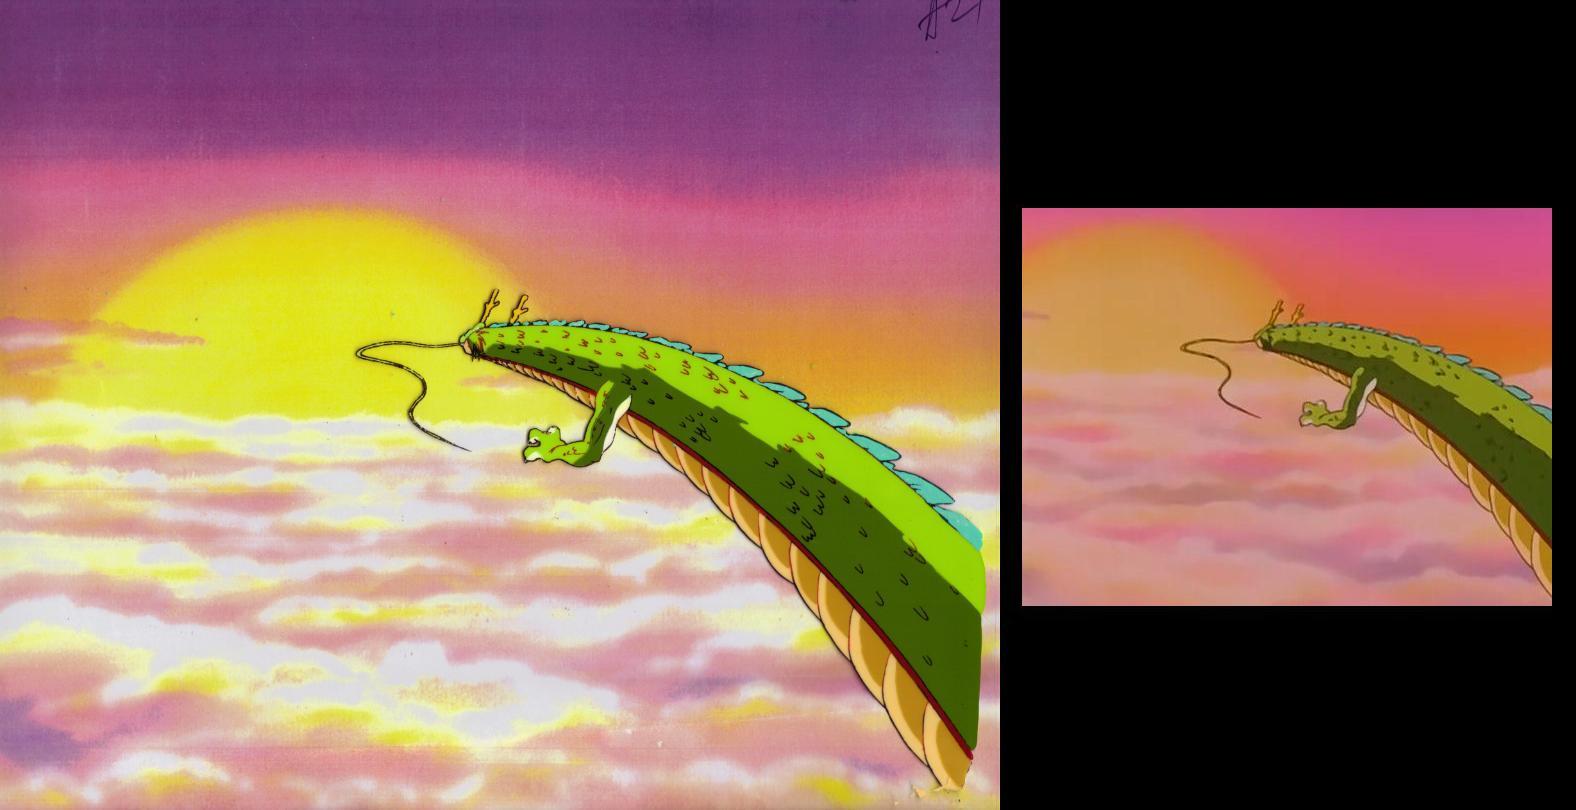 Dragon Ball GT, Sangoku flying (1996-1997)